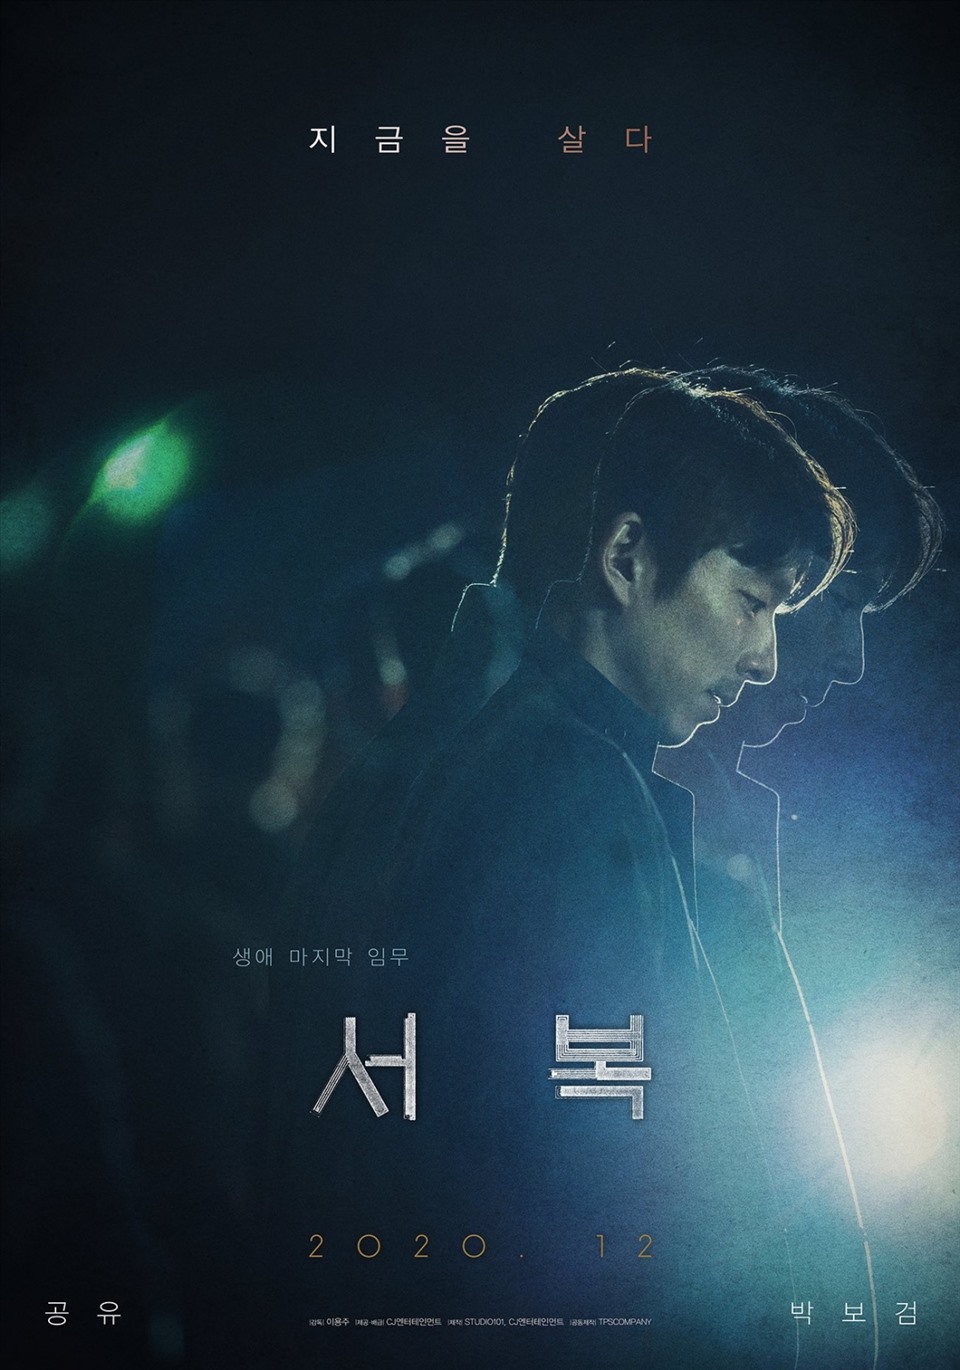 Gong Yoo bí ẩn trong poster giới thiệu phim “Seo Bok“. Ảnh nguồn: Mnet.